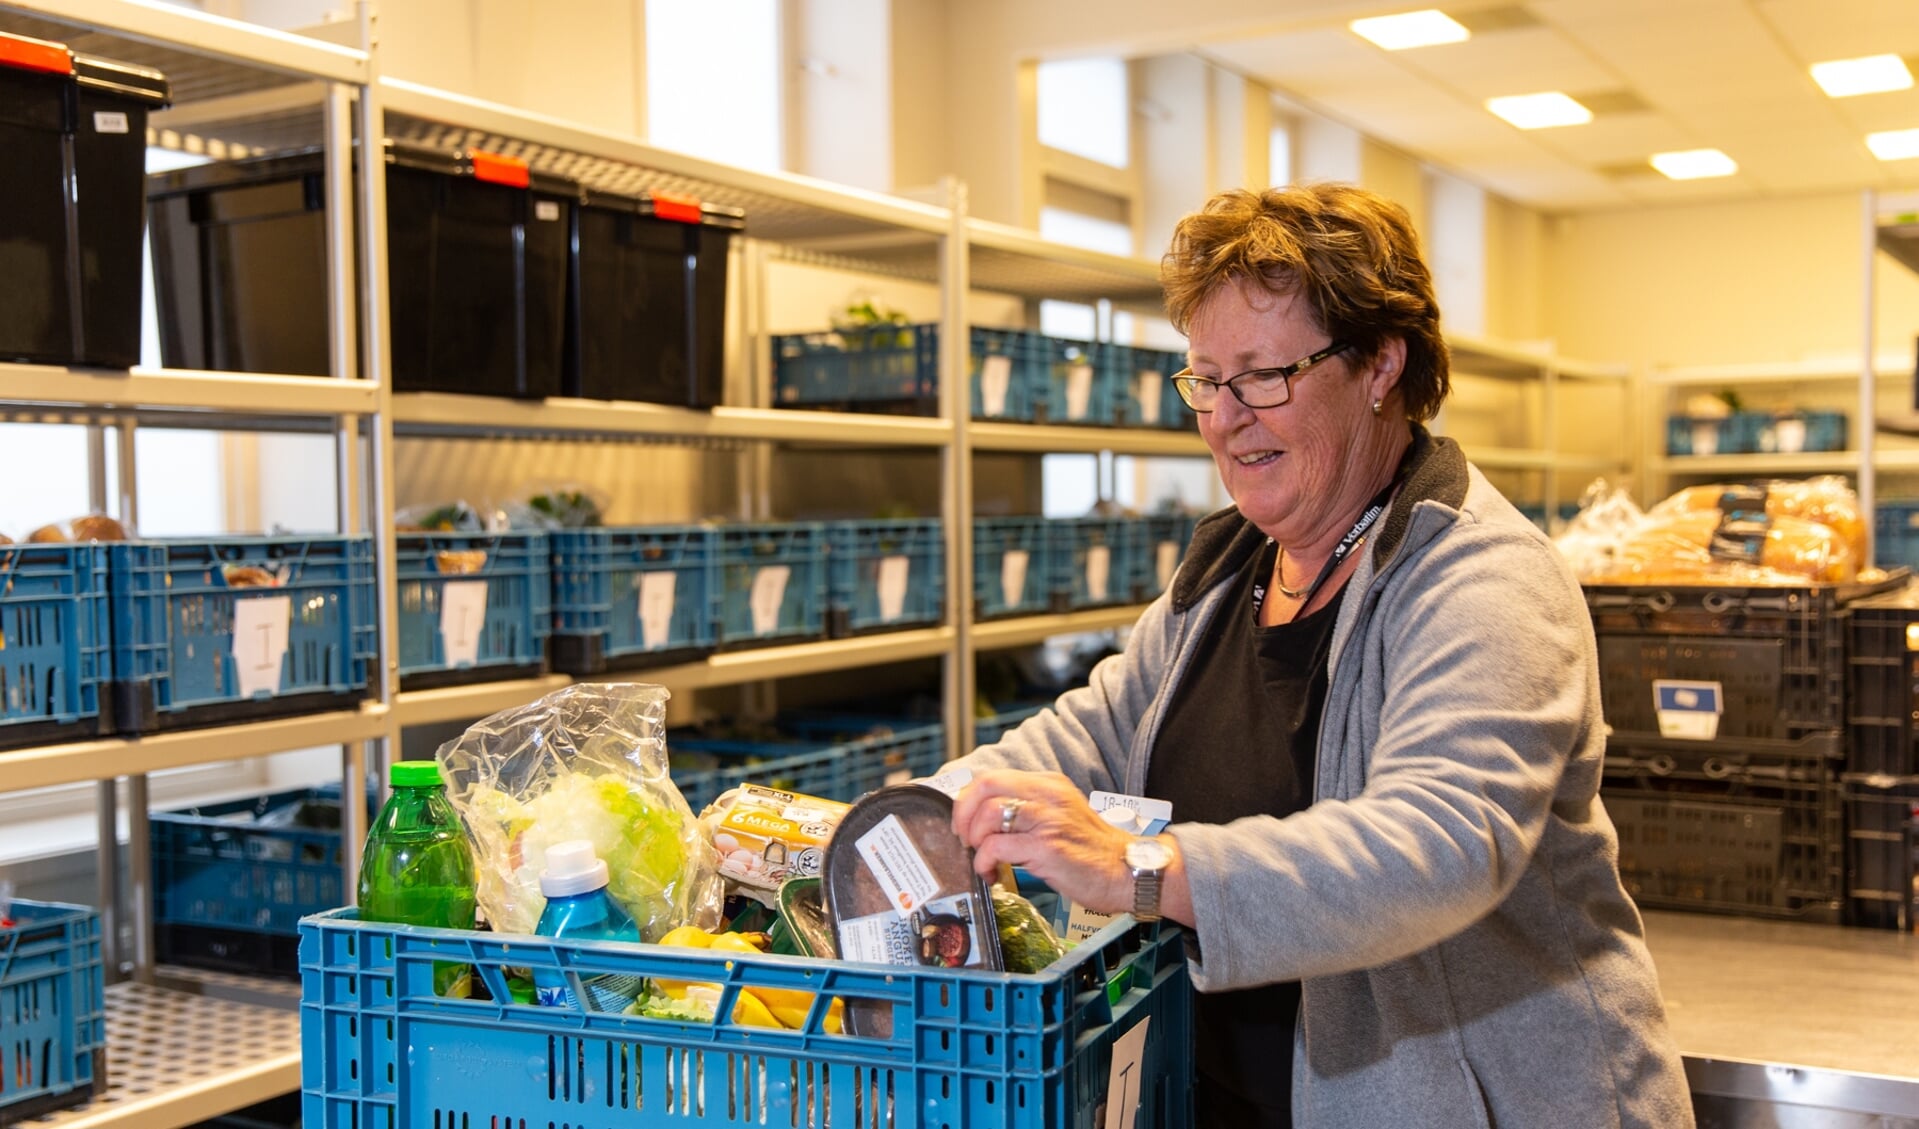 De vrijwilligers van de Voedselbank zullen de komende tijd meer pakketten klaar moeten maken. | Foto: pr